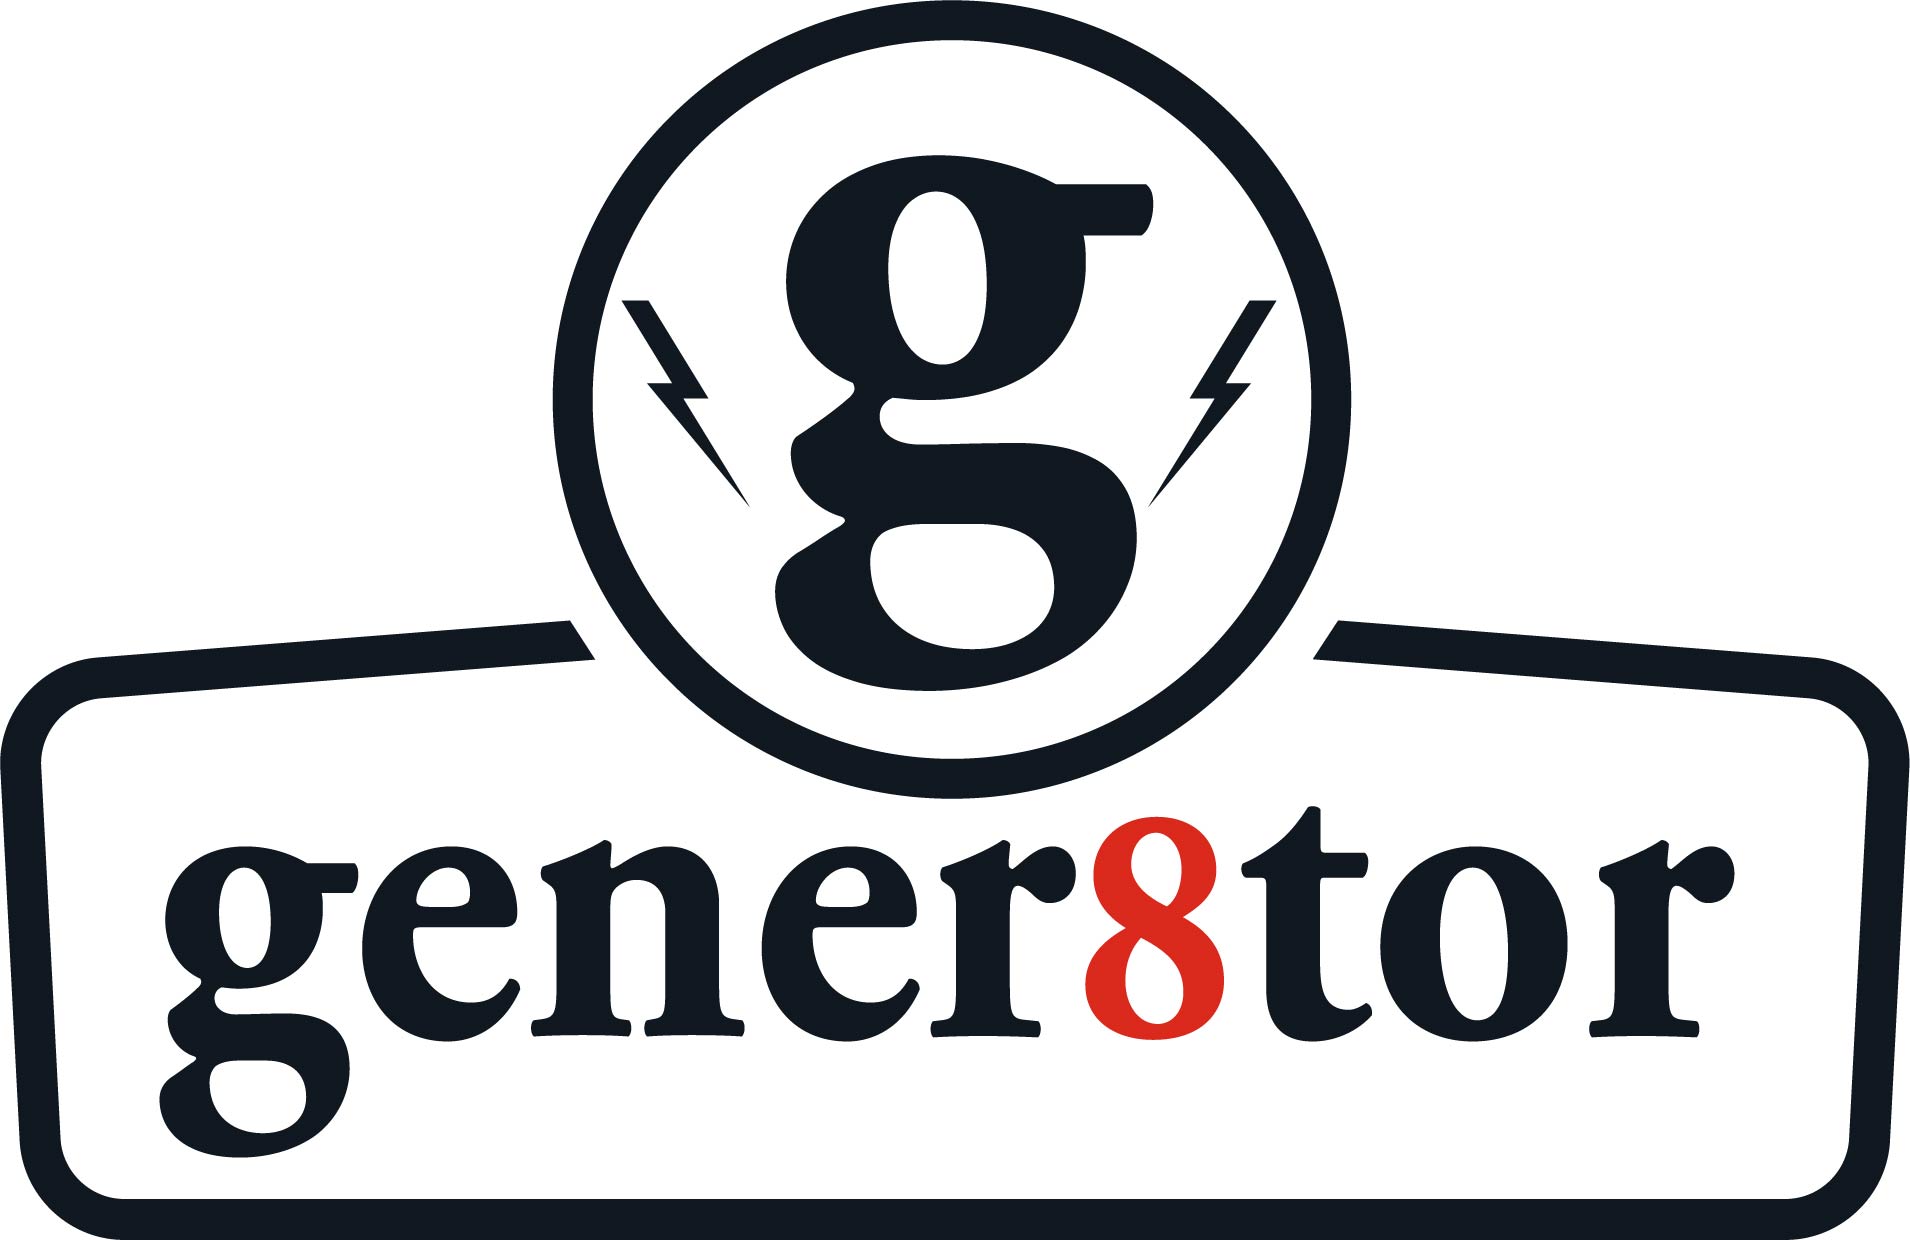 gener8tor logo